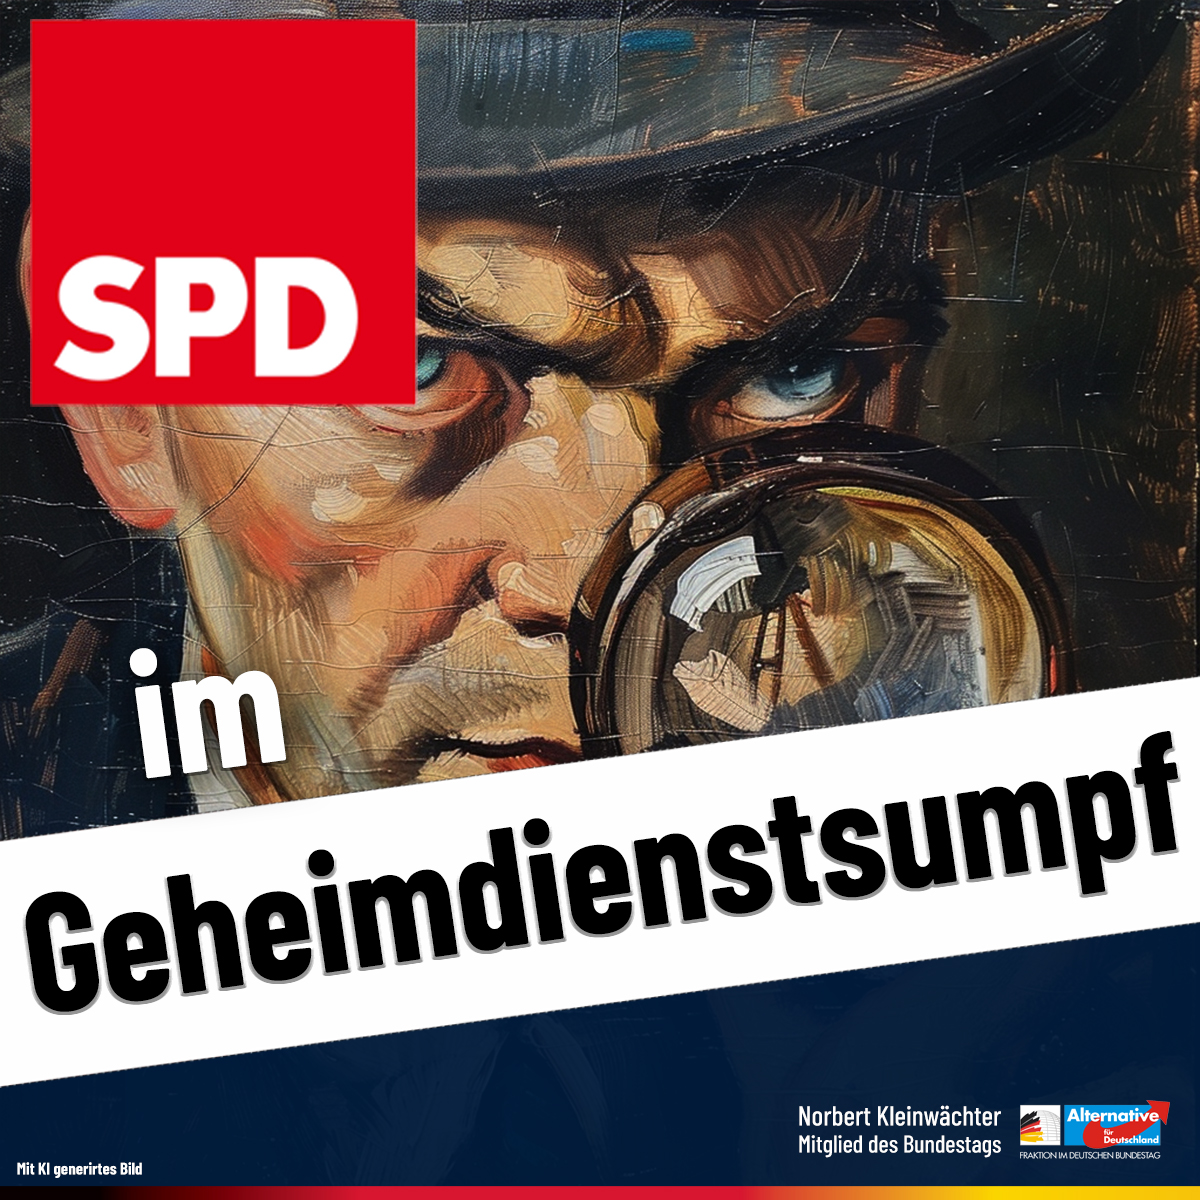 SPD im Geheimdienstsumpf

Der Staatsfunk will uns weissmachen, dass der Chef des Brandenburger Verfassungsschutzes - ein SPD-Mitglied - den ein SPD-Minister eingesetzt hat, politisch neutral ist. 

Sogar die Parlamentarischen „Kontrollkommission“
wird von der SPD kontrolliert.